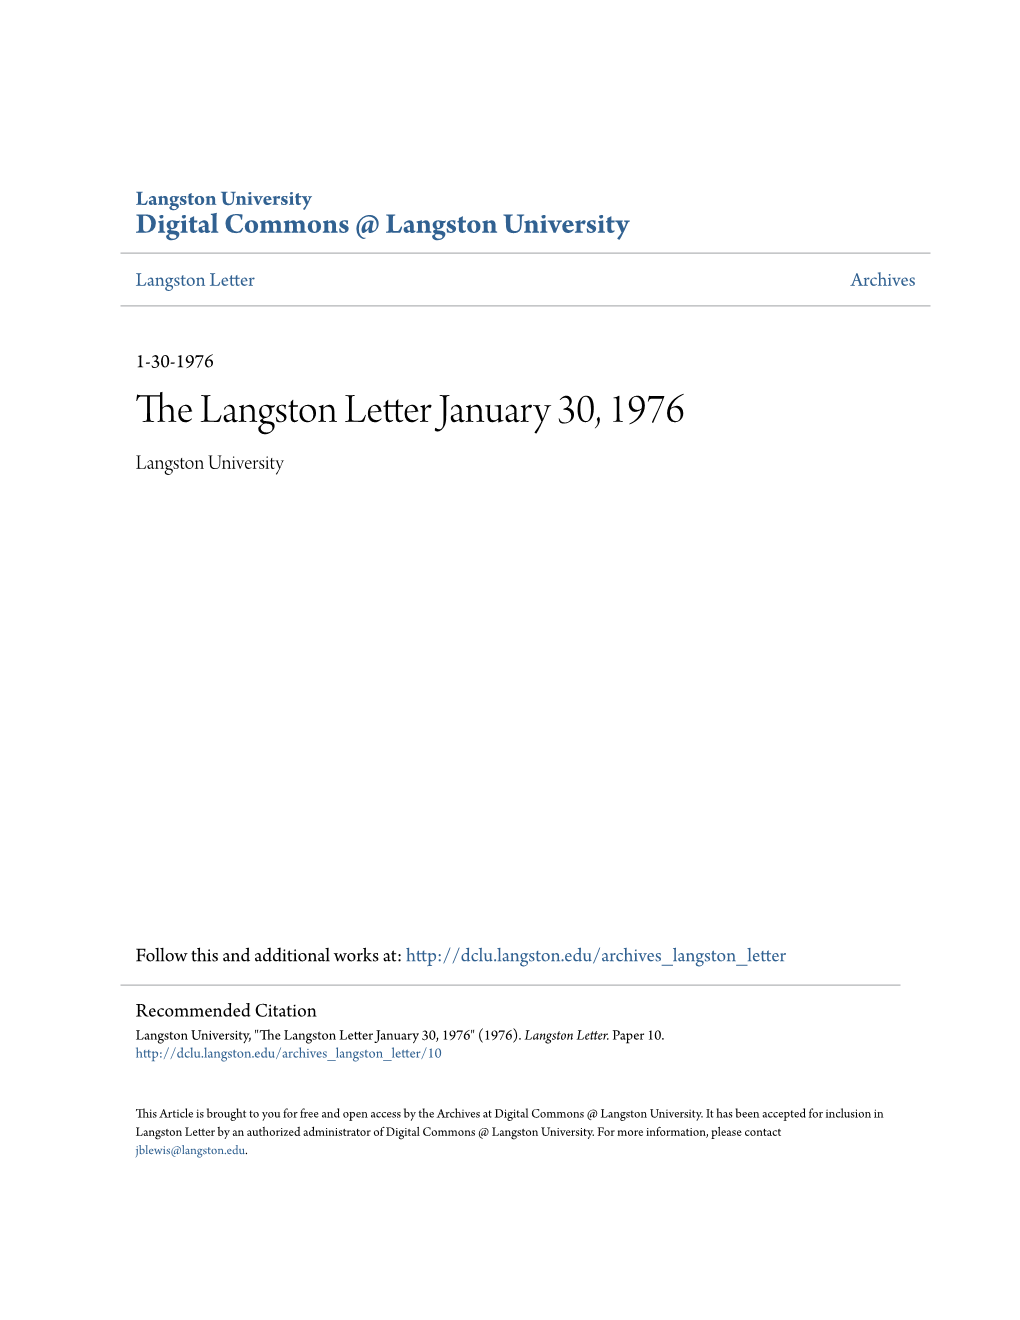 The Langston Letter January 30, 1976 Langston University